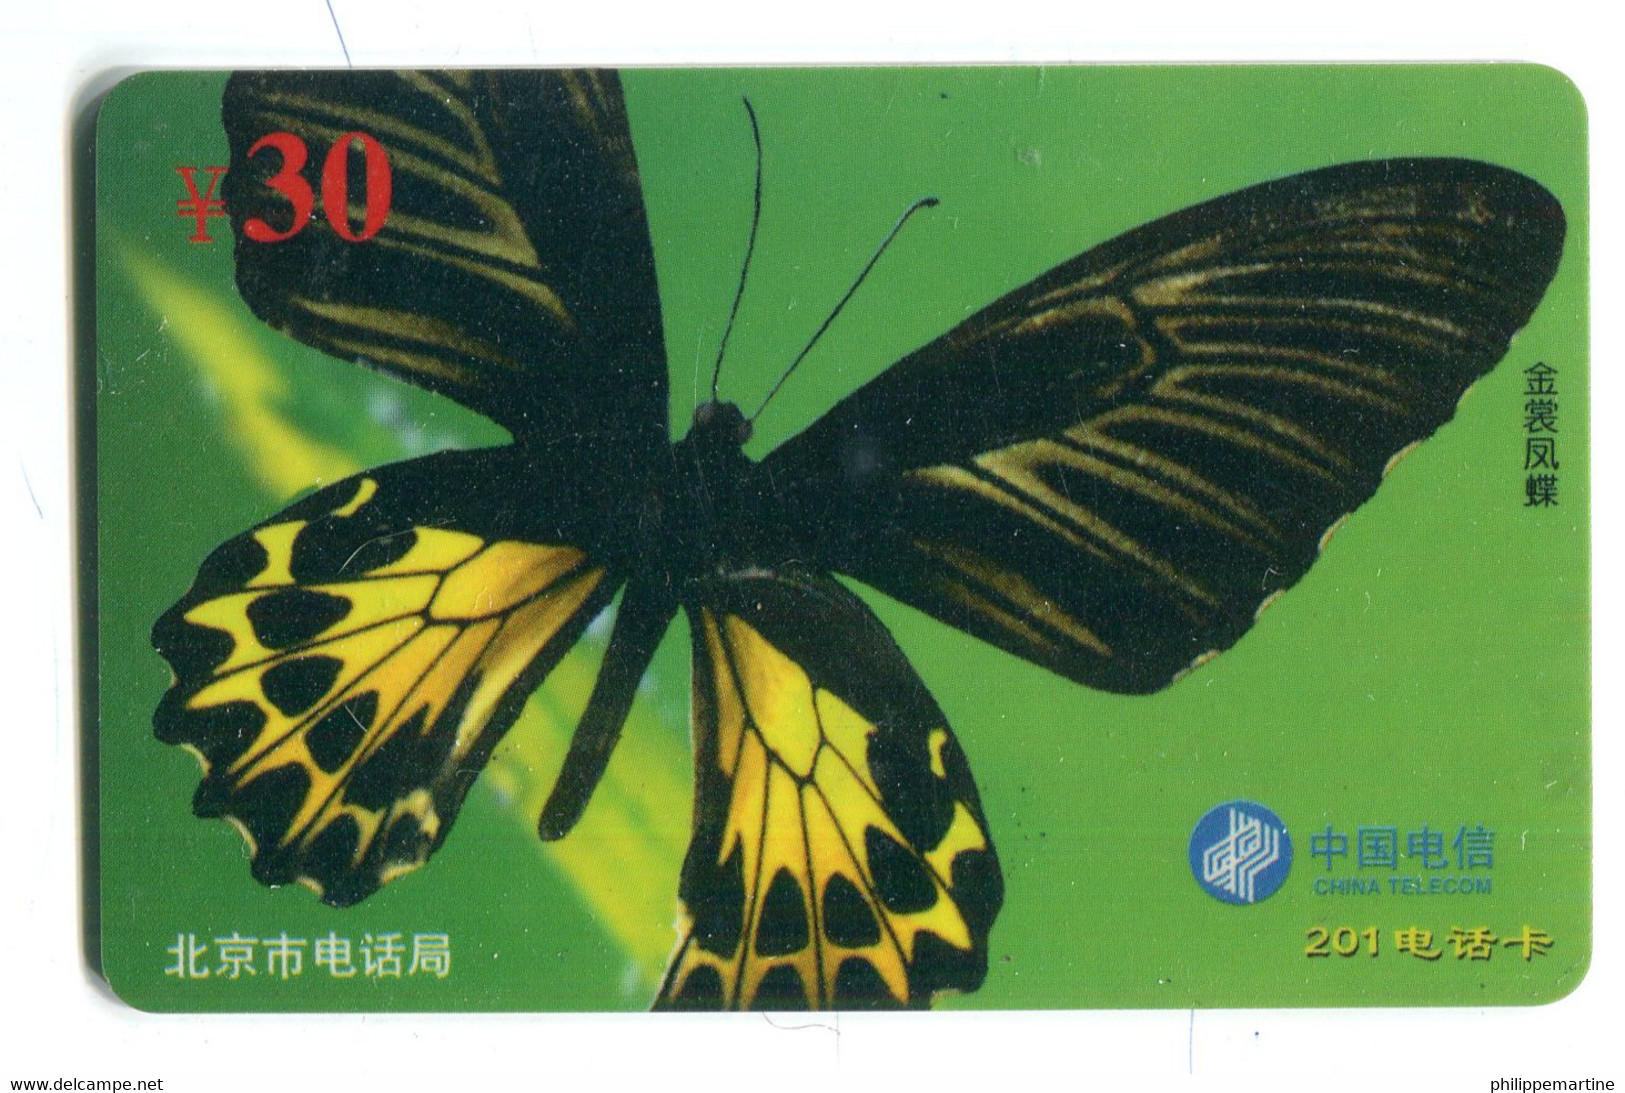 Télécarte China Telecom : Papillon - Schmetterlinge